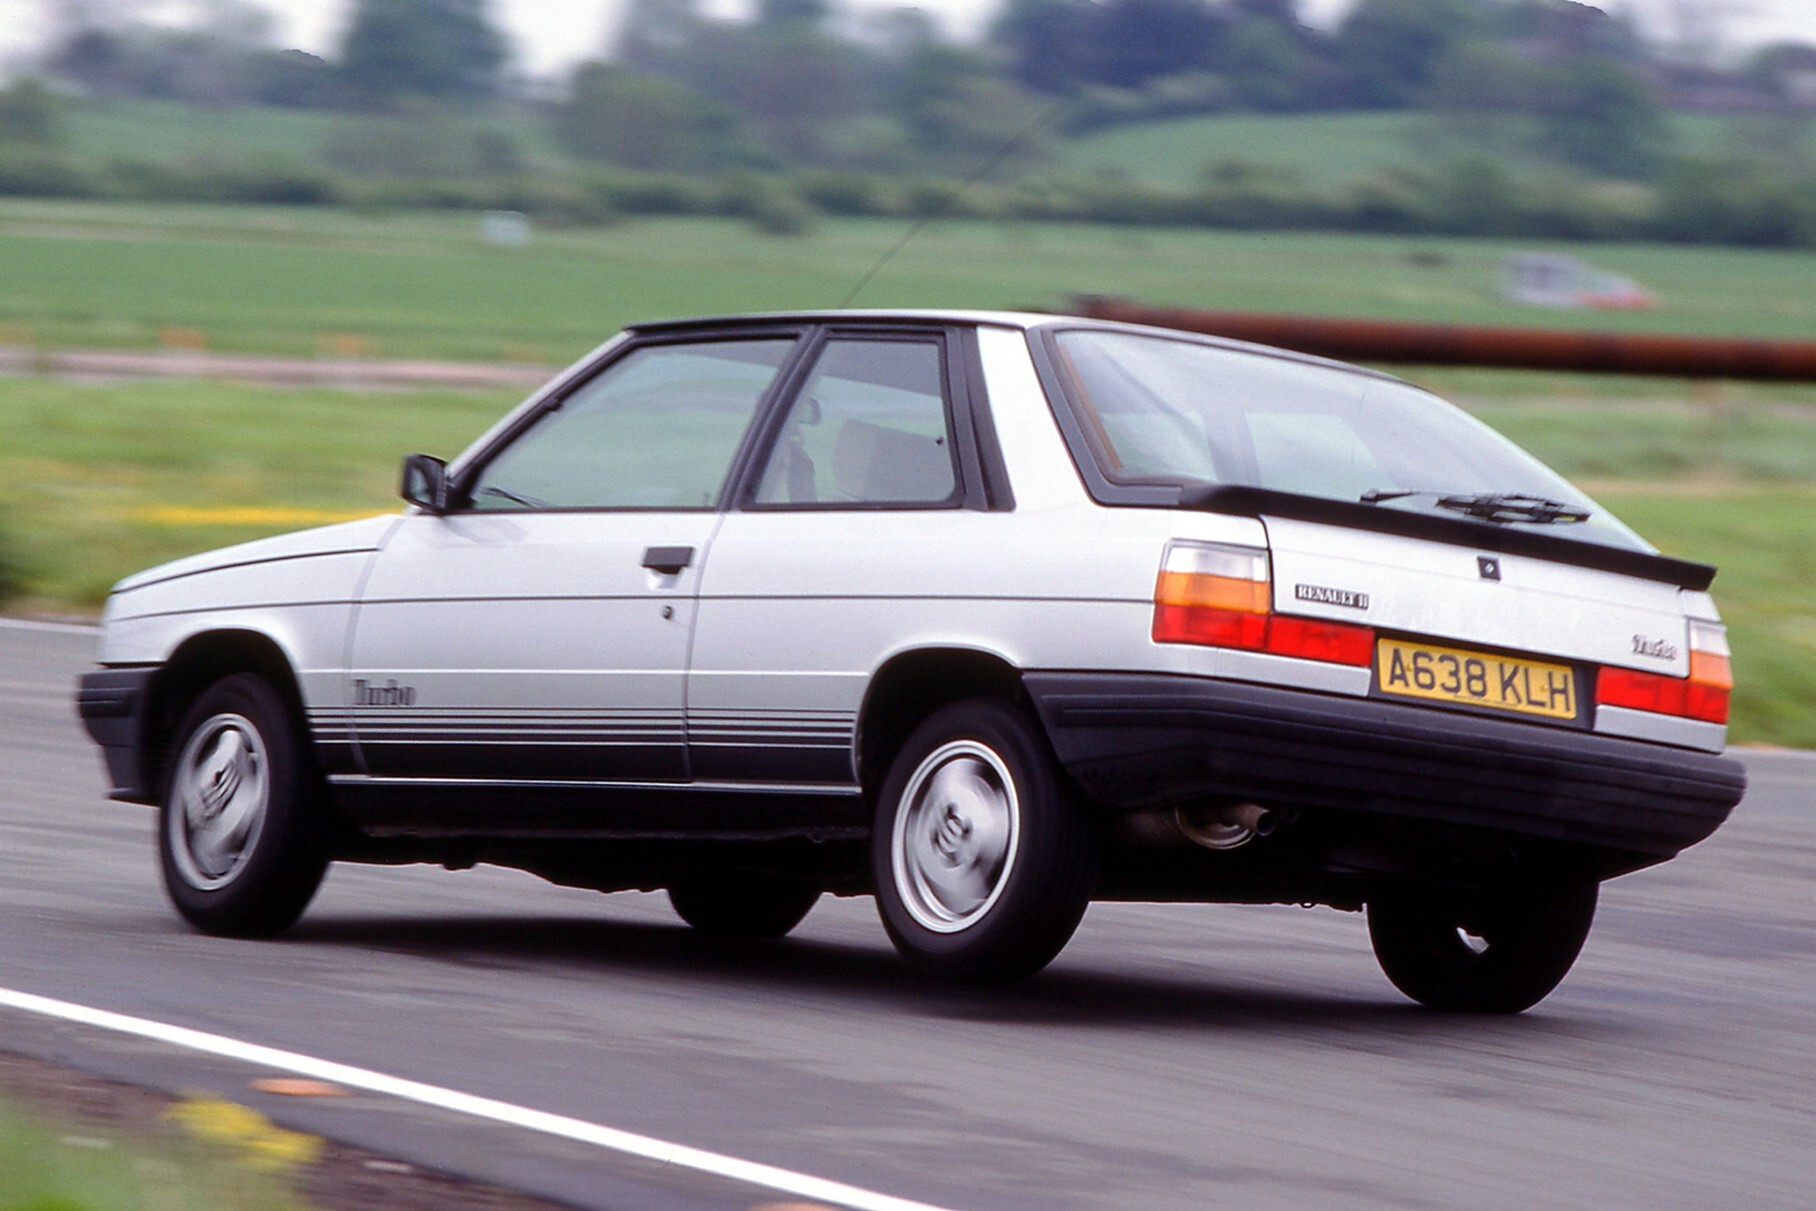 Так что это был весьма и весьма проворный автомобиль, набиравший «сотню» примерно за девять секунд и с максимальной скоростью 186 километров в час. Всё это сочеталось с более просторным салоном и большим багажником — журналисты называли хэтчбек «Renault 5 GT Turbo для семейного человека». В восьмидесятые бодрый «француз» был достойной альтернативой машинам вроде Ford Escort XR3i, но оказался полностью забыт сейчас.